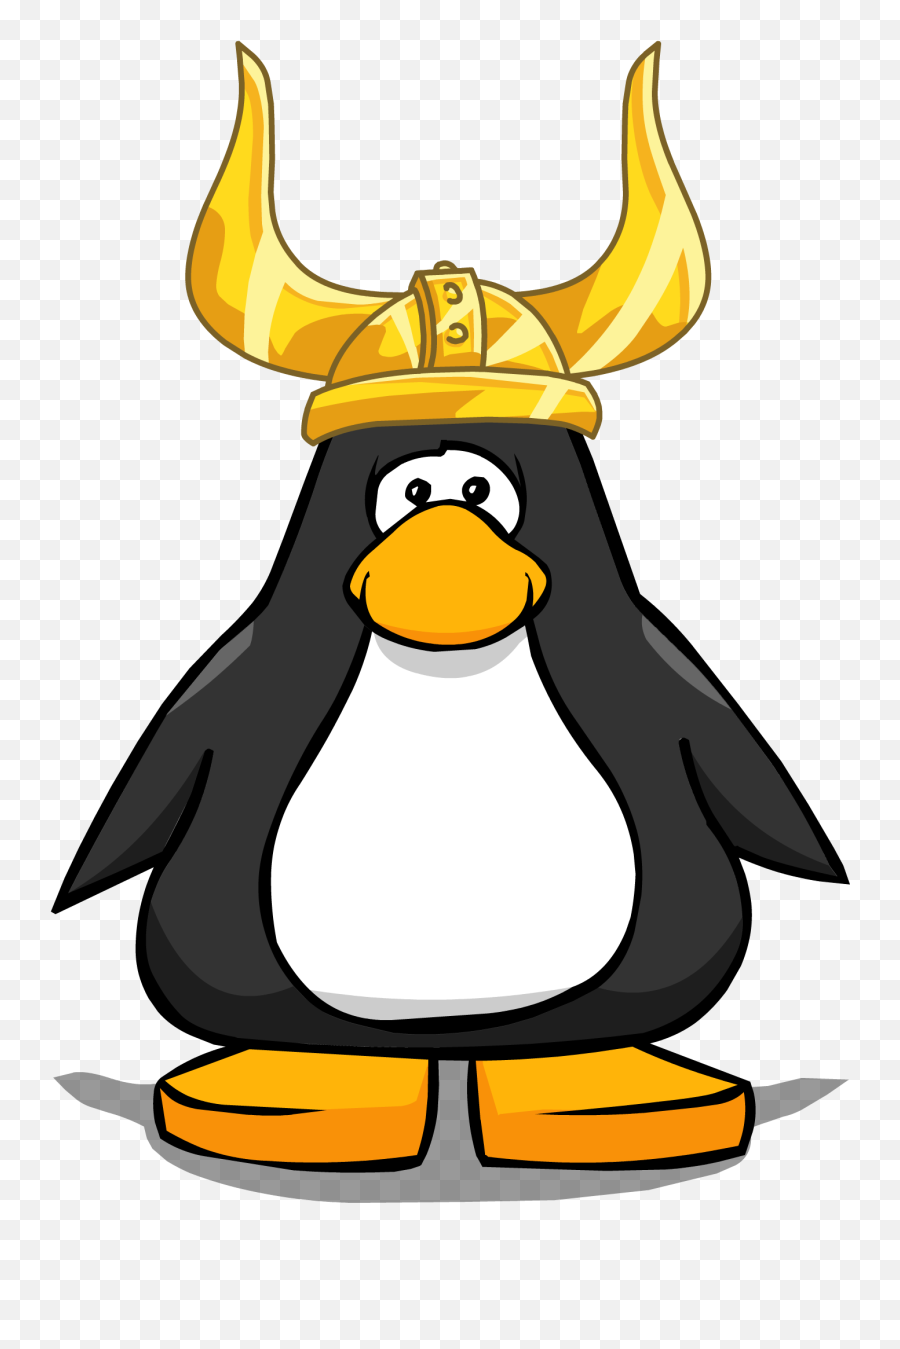 Solid Gold Viking Helmet - Viking Helmet Club Penguin Emoji,Viking Helmet Emoji